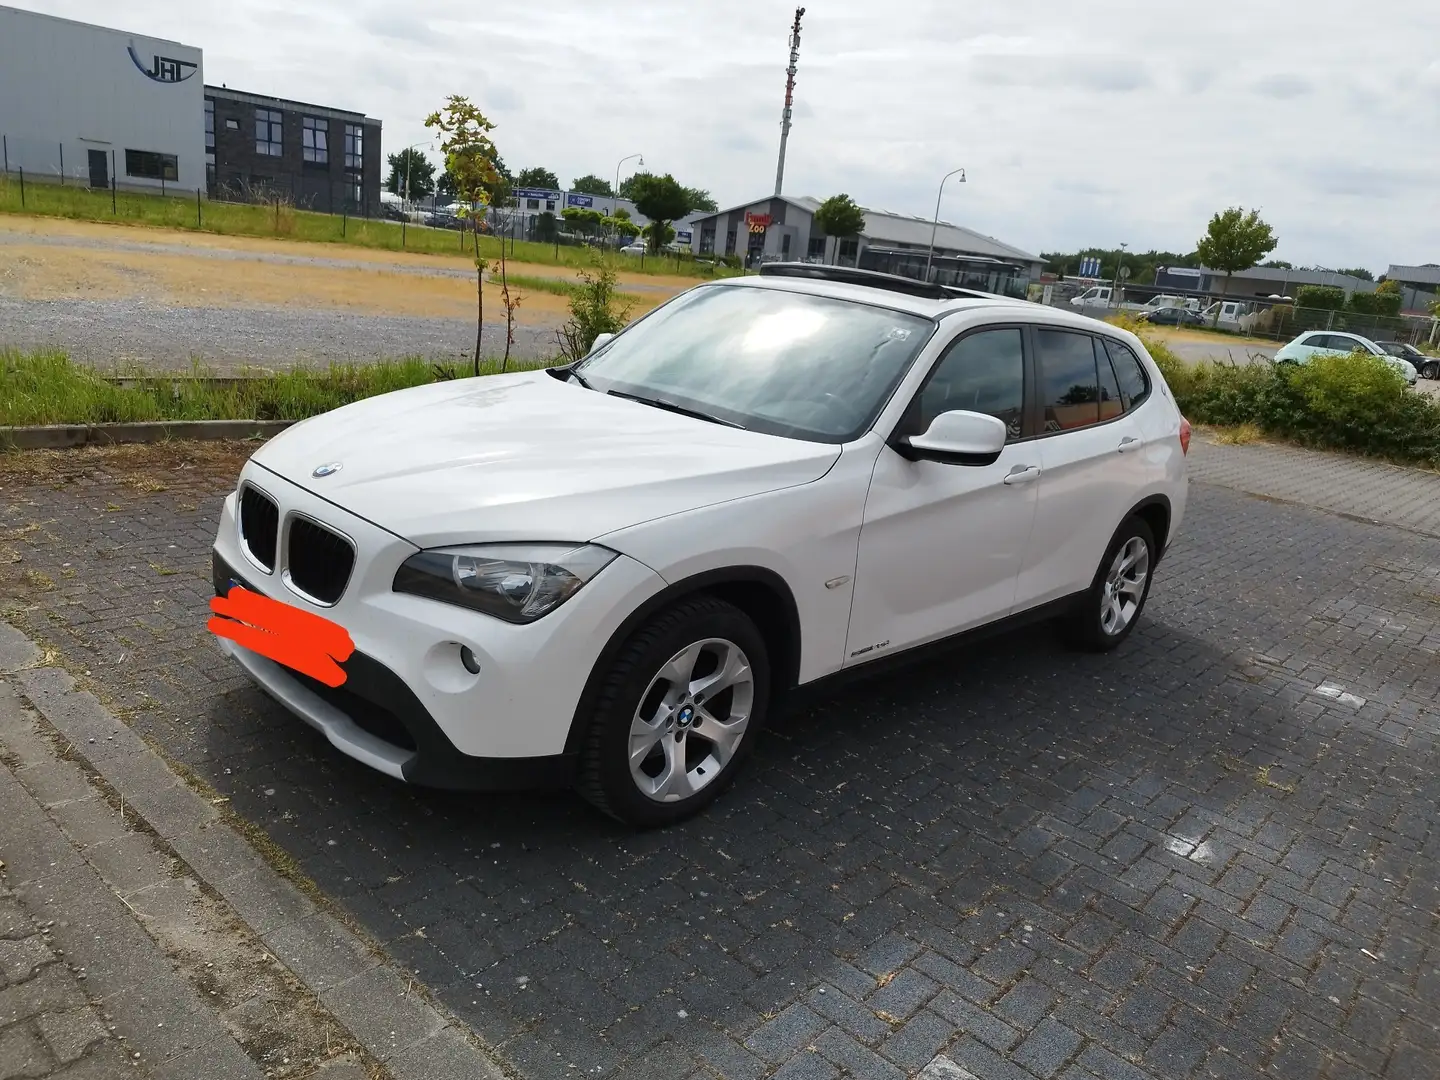 BMW X1 SUV/Geländewagen/Pickup in Weiß gebraucht in Heinsberg für € 7.700